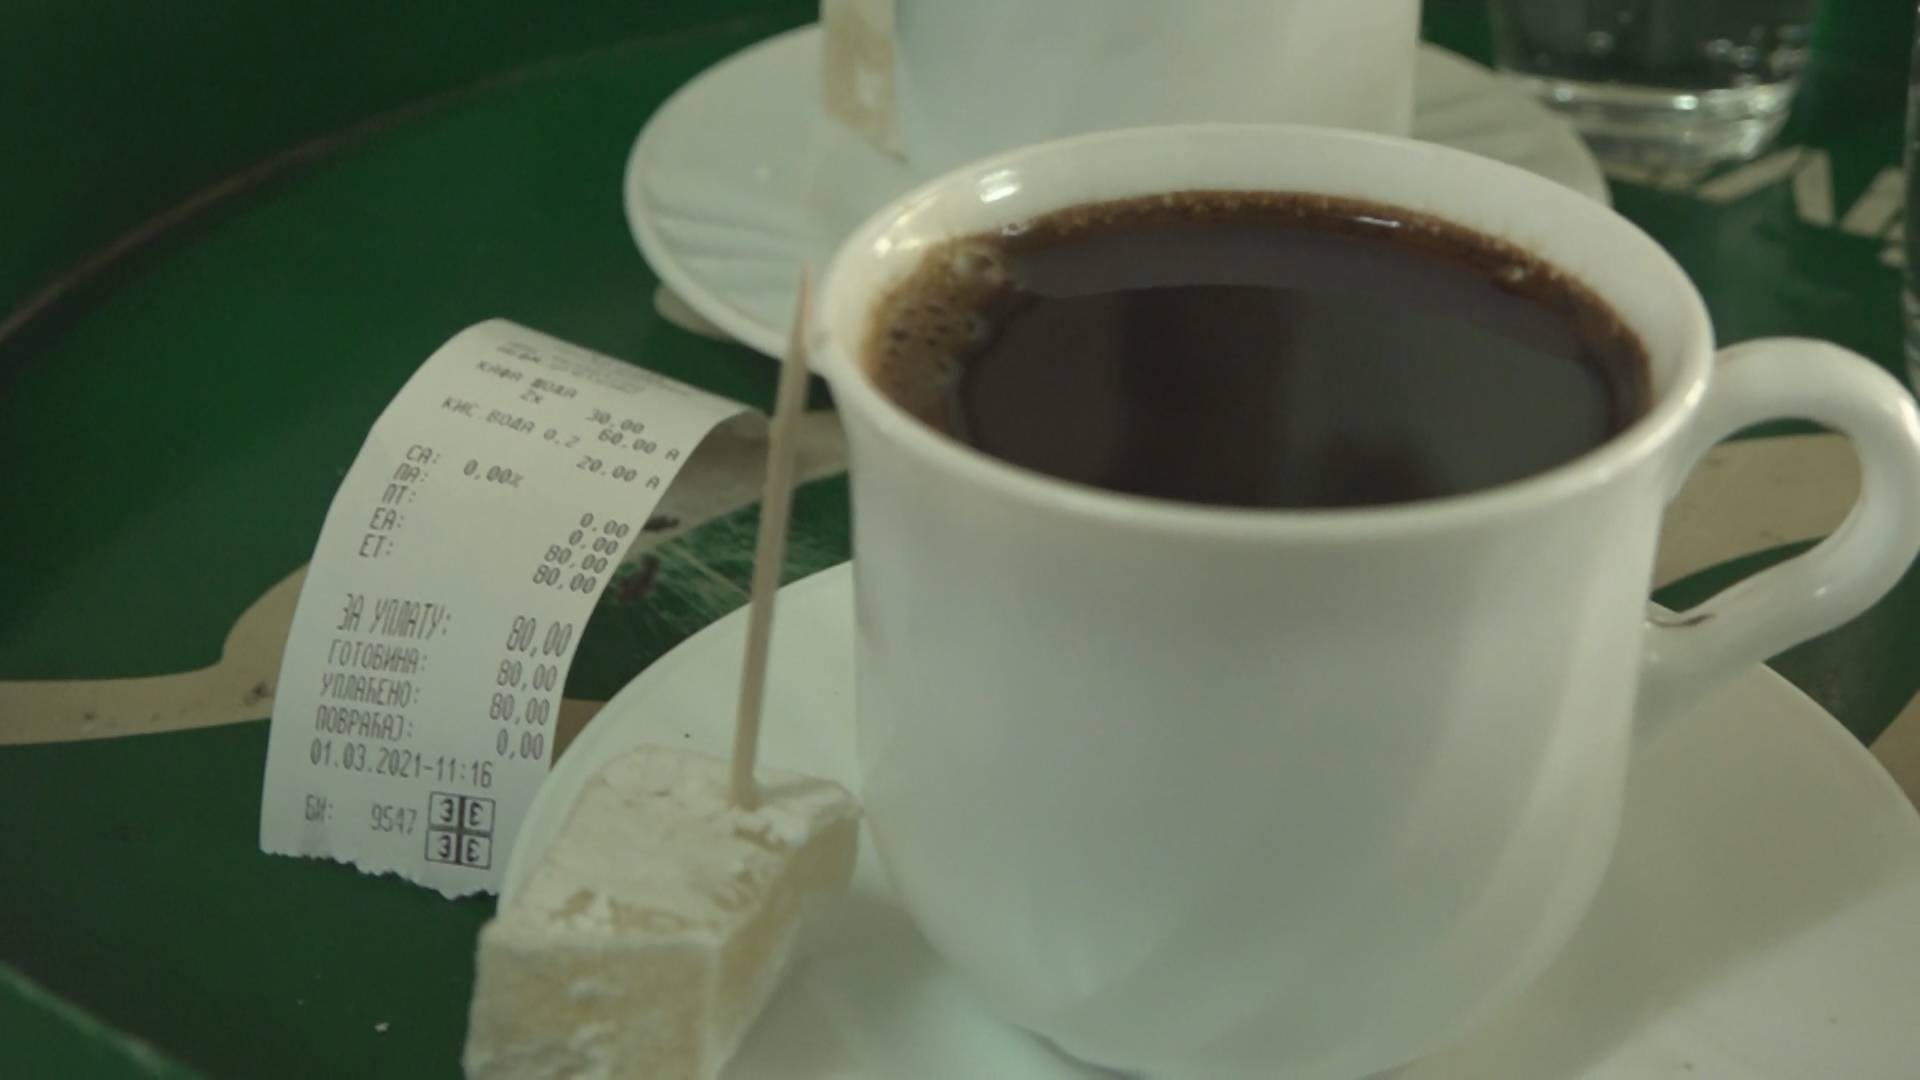 Je li ovo neka greška - ljudi u šoku gledaju račun u kafani u Guči i ne veruju koliko košta kafa